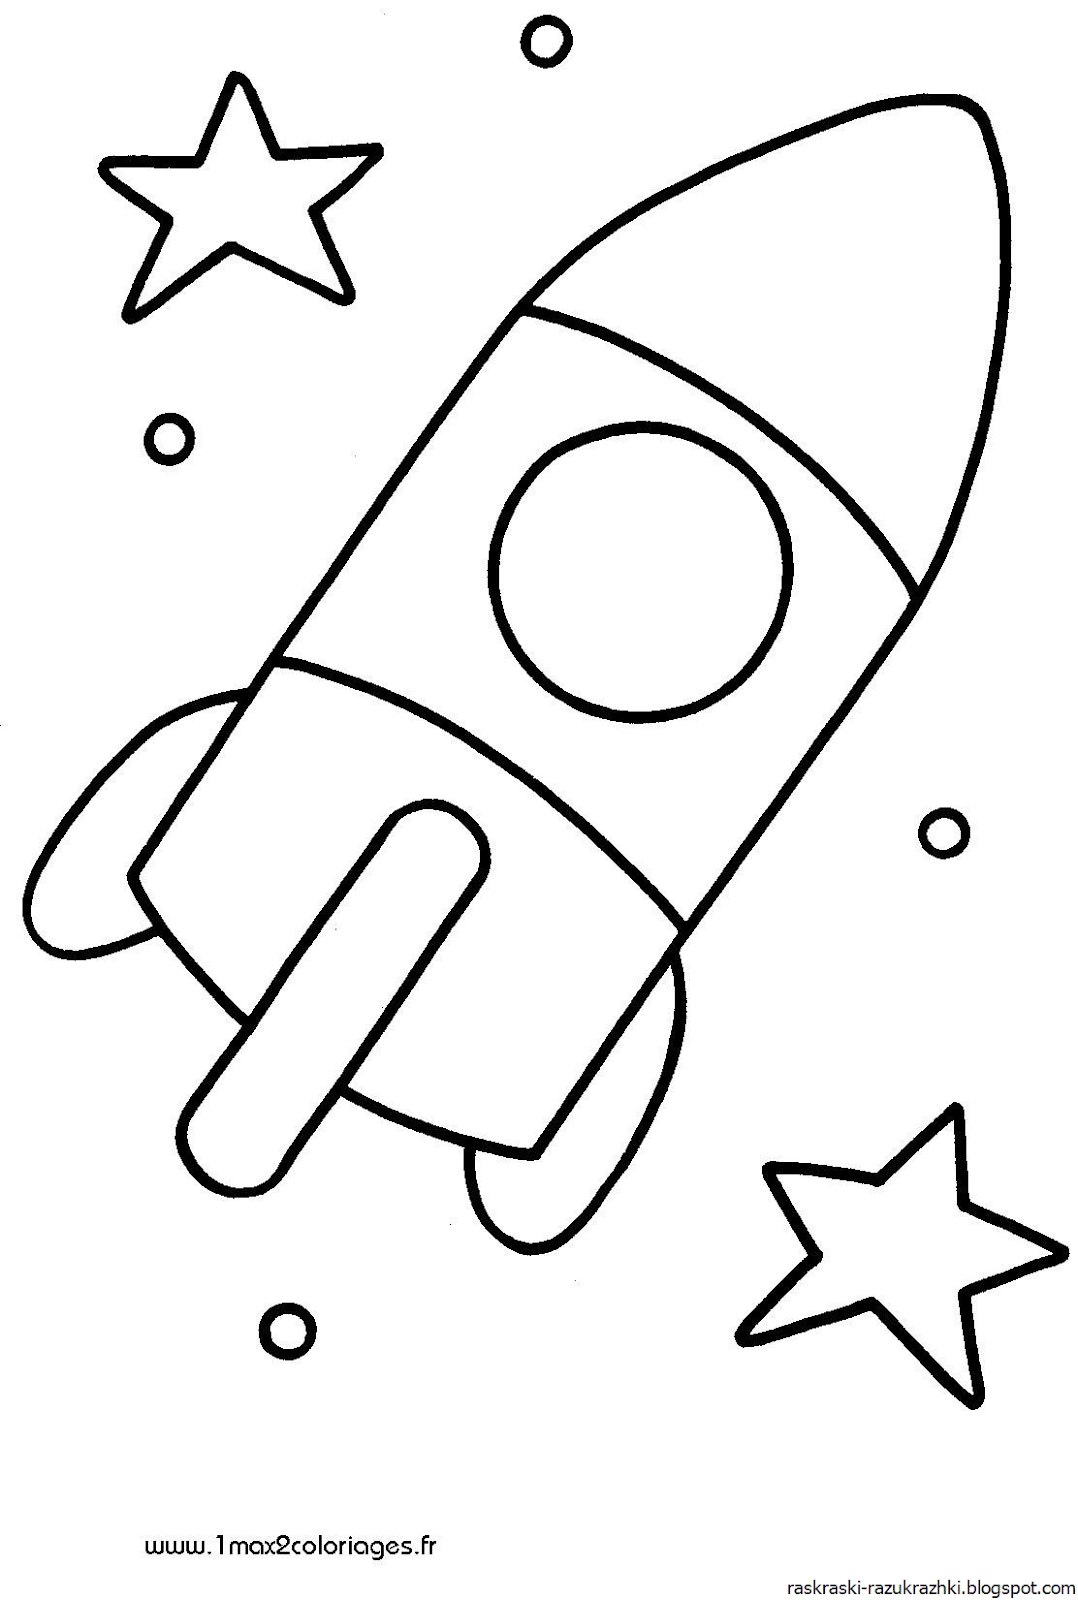 Ракета раскраска. Ракета раскраска для малышей. Раскраски на тему космос для детей 3-4 лет. Раскраска для малышей. Космос. Аппликация космос средняя группа шаблоны